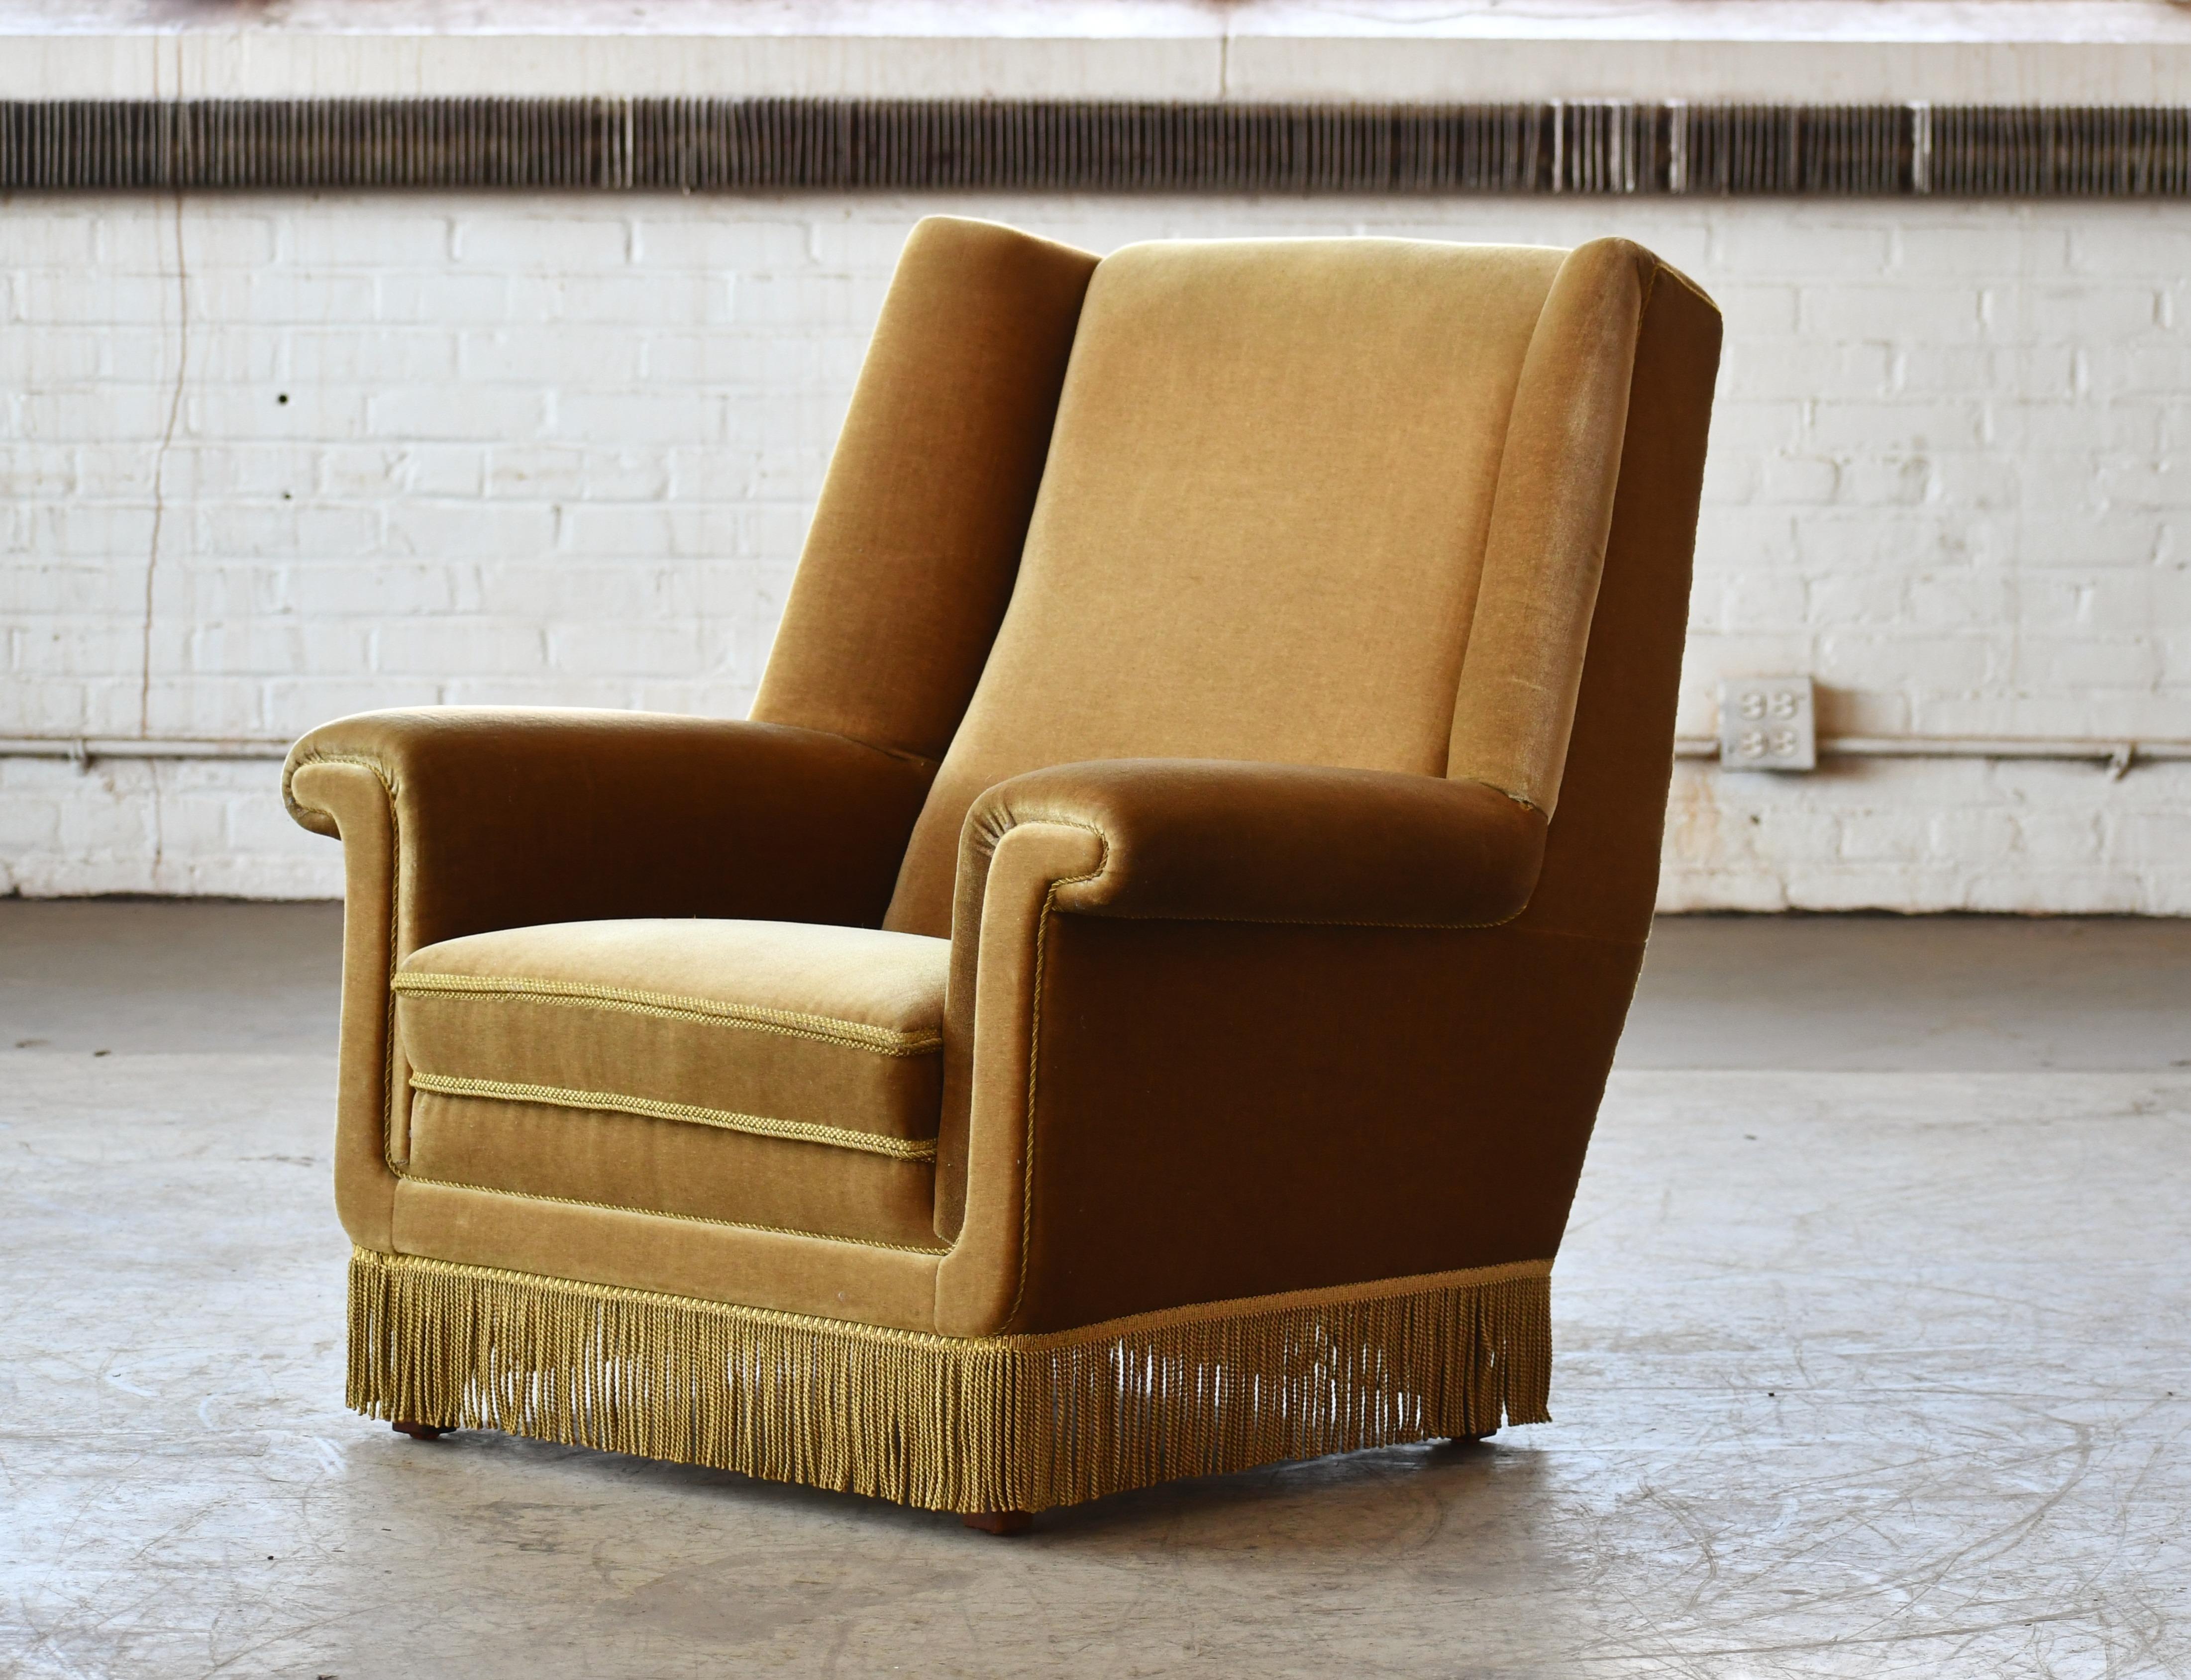 Magnifique chaise longue à dossier haut conçue par G. Thams pour Vejen Polstermobelfabrik vers 1968. La chaise a été vendue par le détaillant Domus Danish et vue dans son catalogue en 1968. Chaise très élégante avec une forte présence. Rembourré